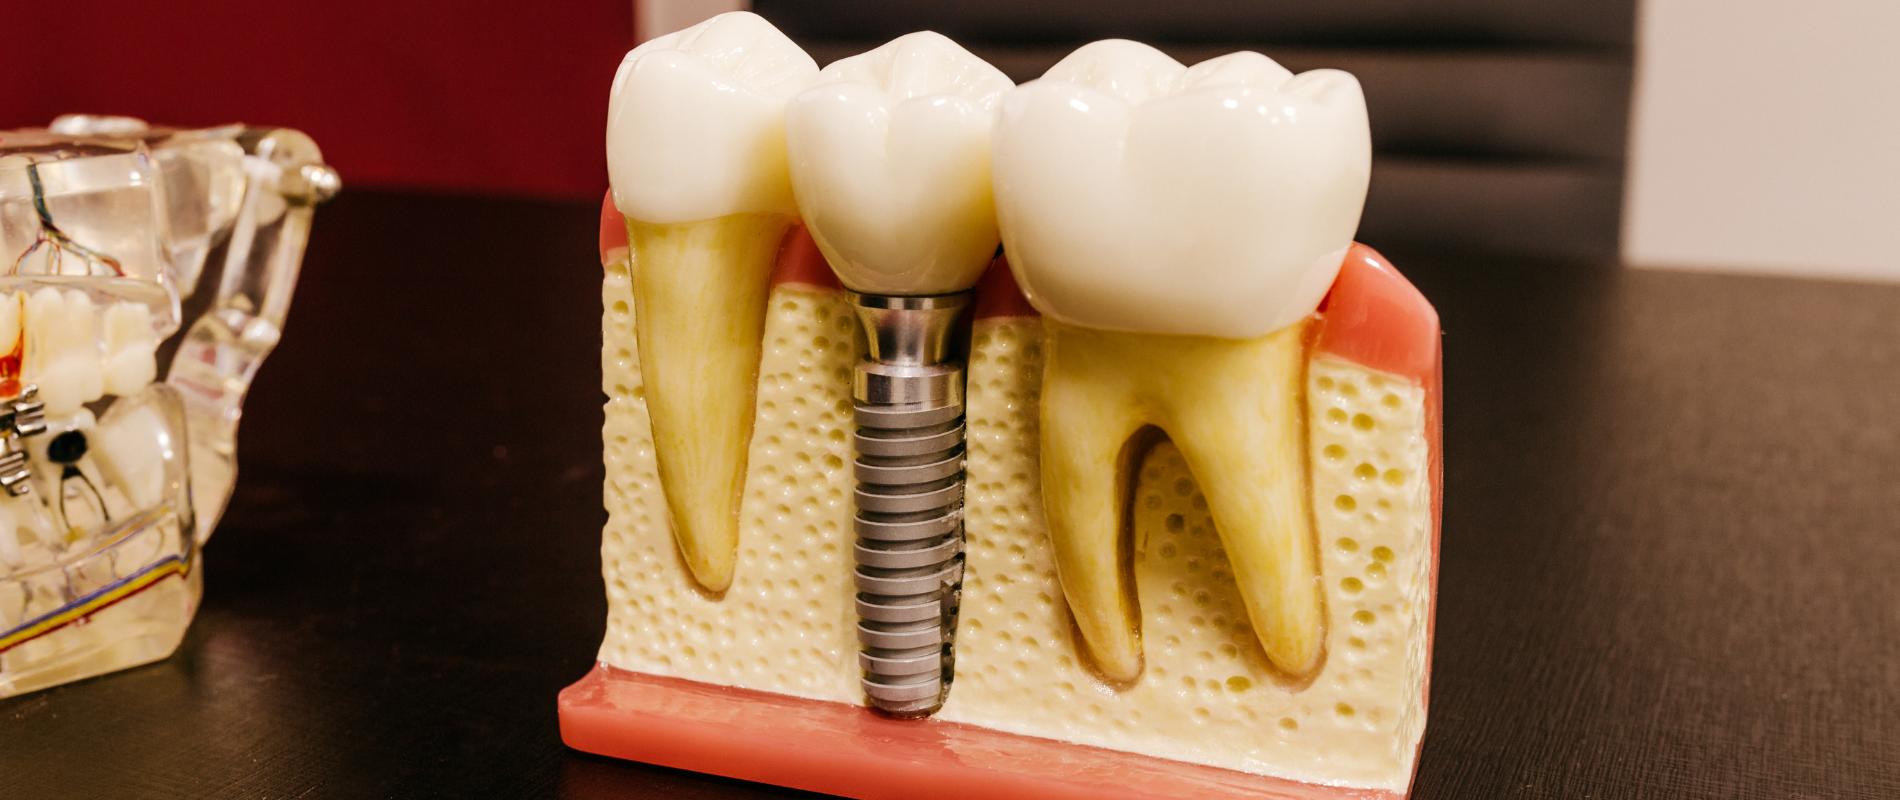 Grazie all'innovativa Implantologia è possibile ottenere una dentatura completa e funzionale in meno